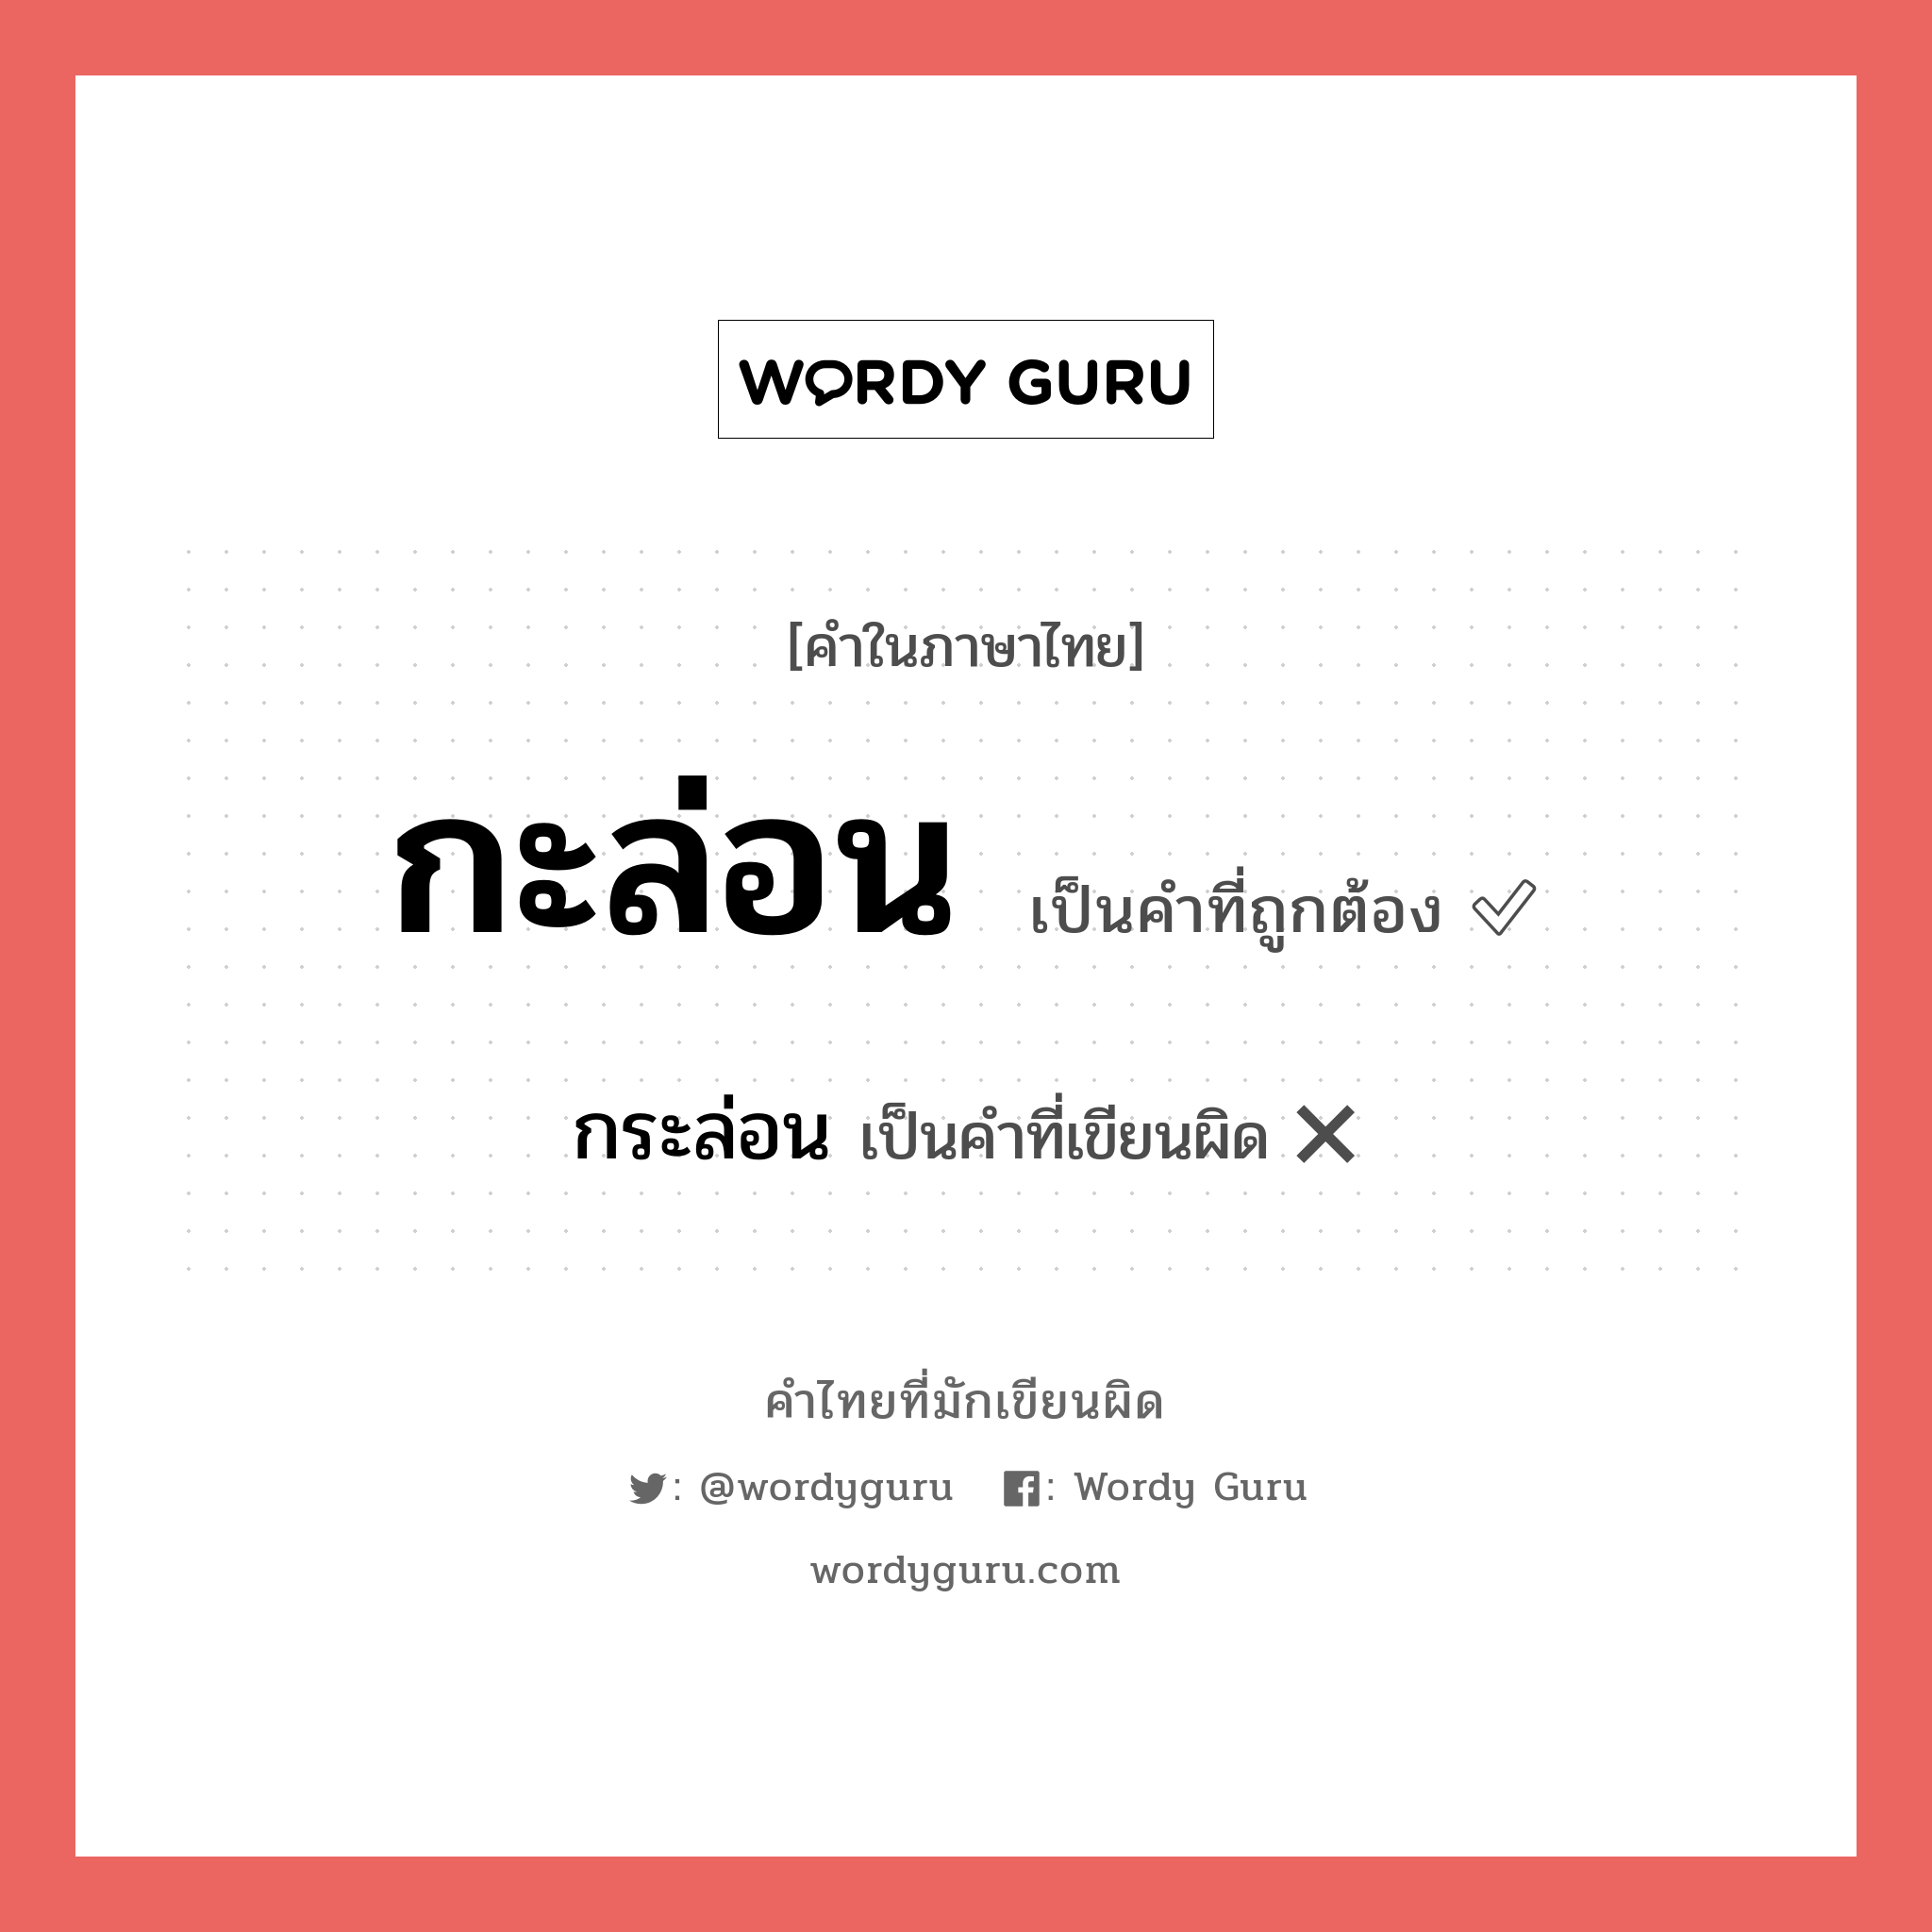 กะล่อน หรือ กระล่อน คำไหนเขียนถูก?, คำในภาษาไทยที่มักเขียนผิด กะล่อน คำที่ผิด ❌ กระล่อน